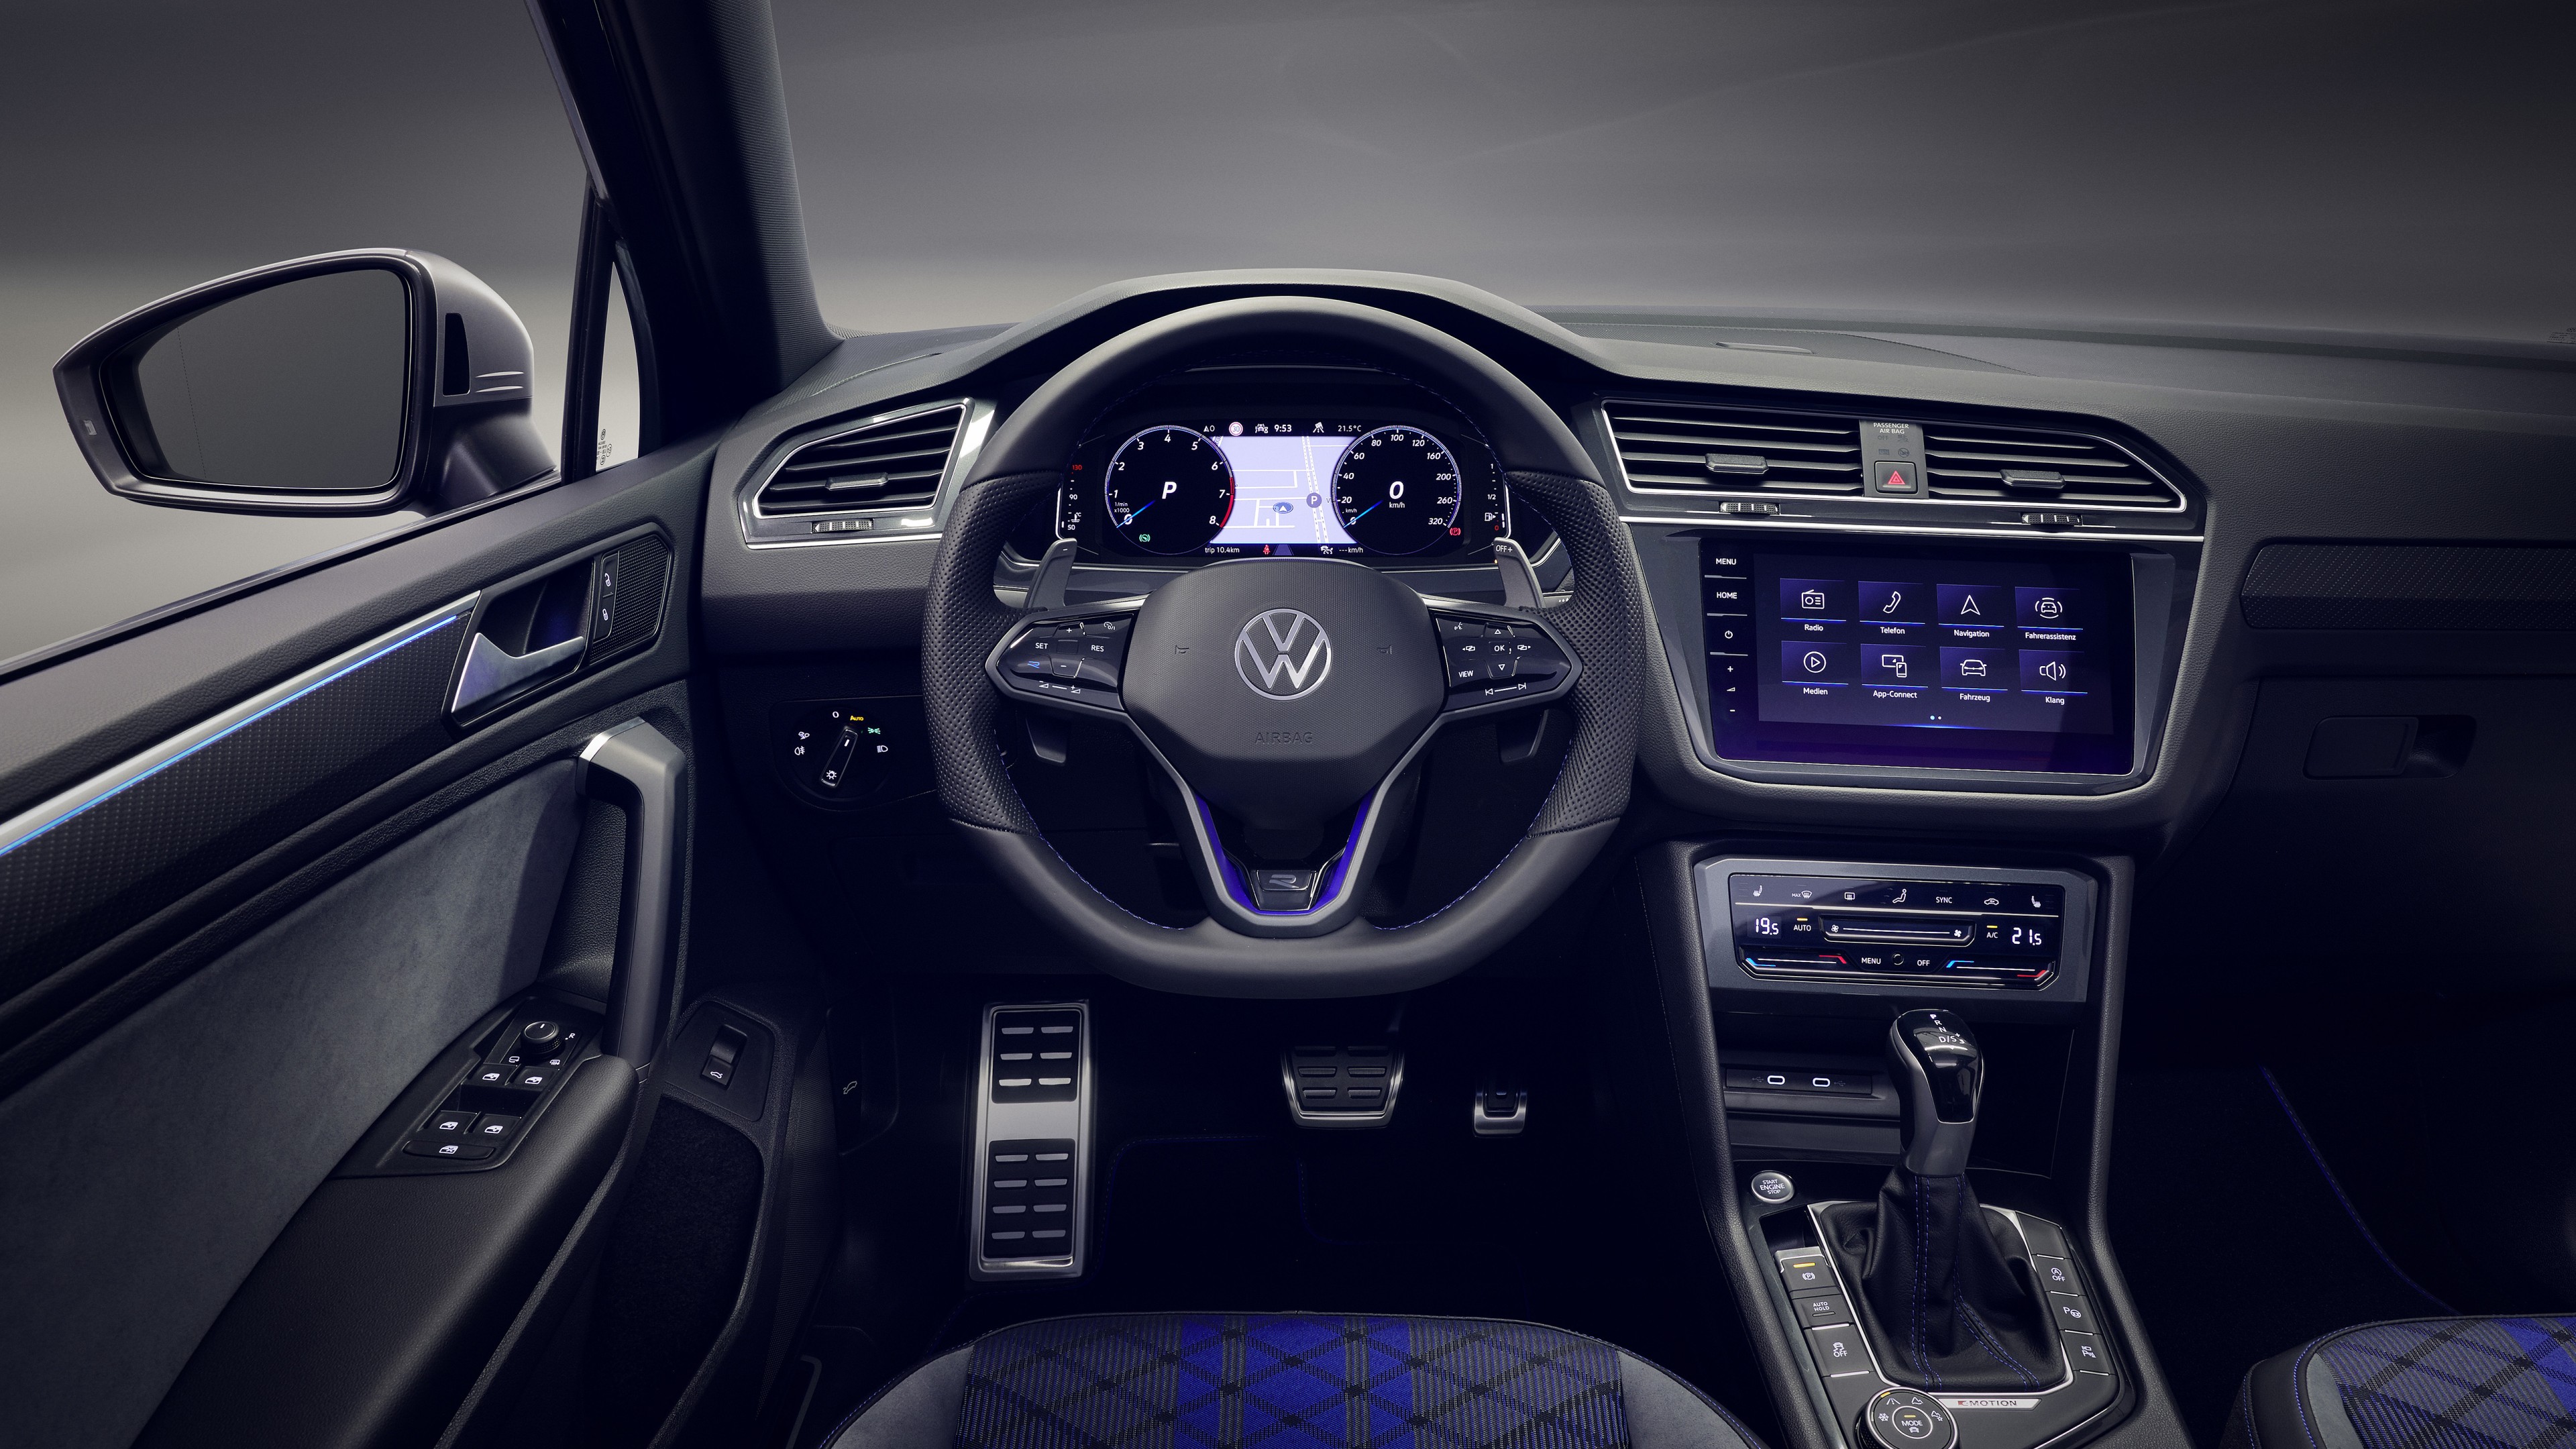 Volkswagen Tiguan Exclusive Edition; Price, Features